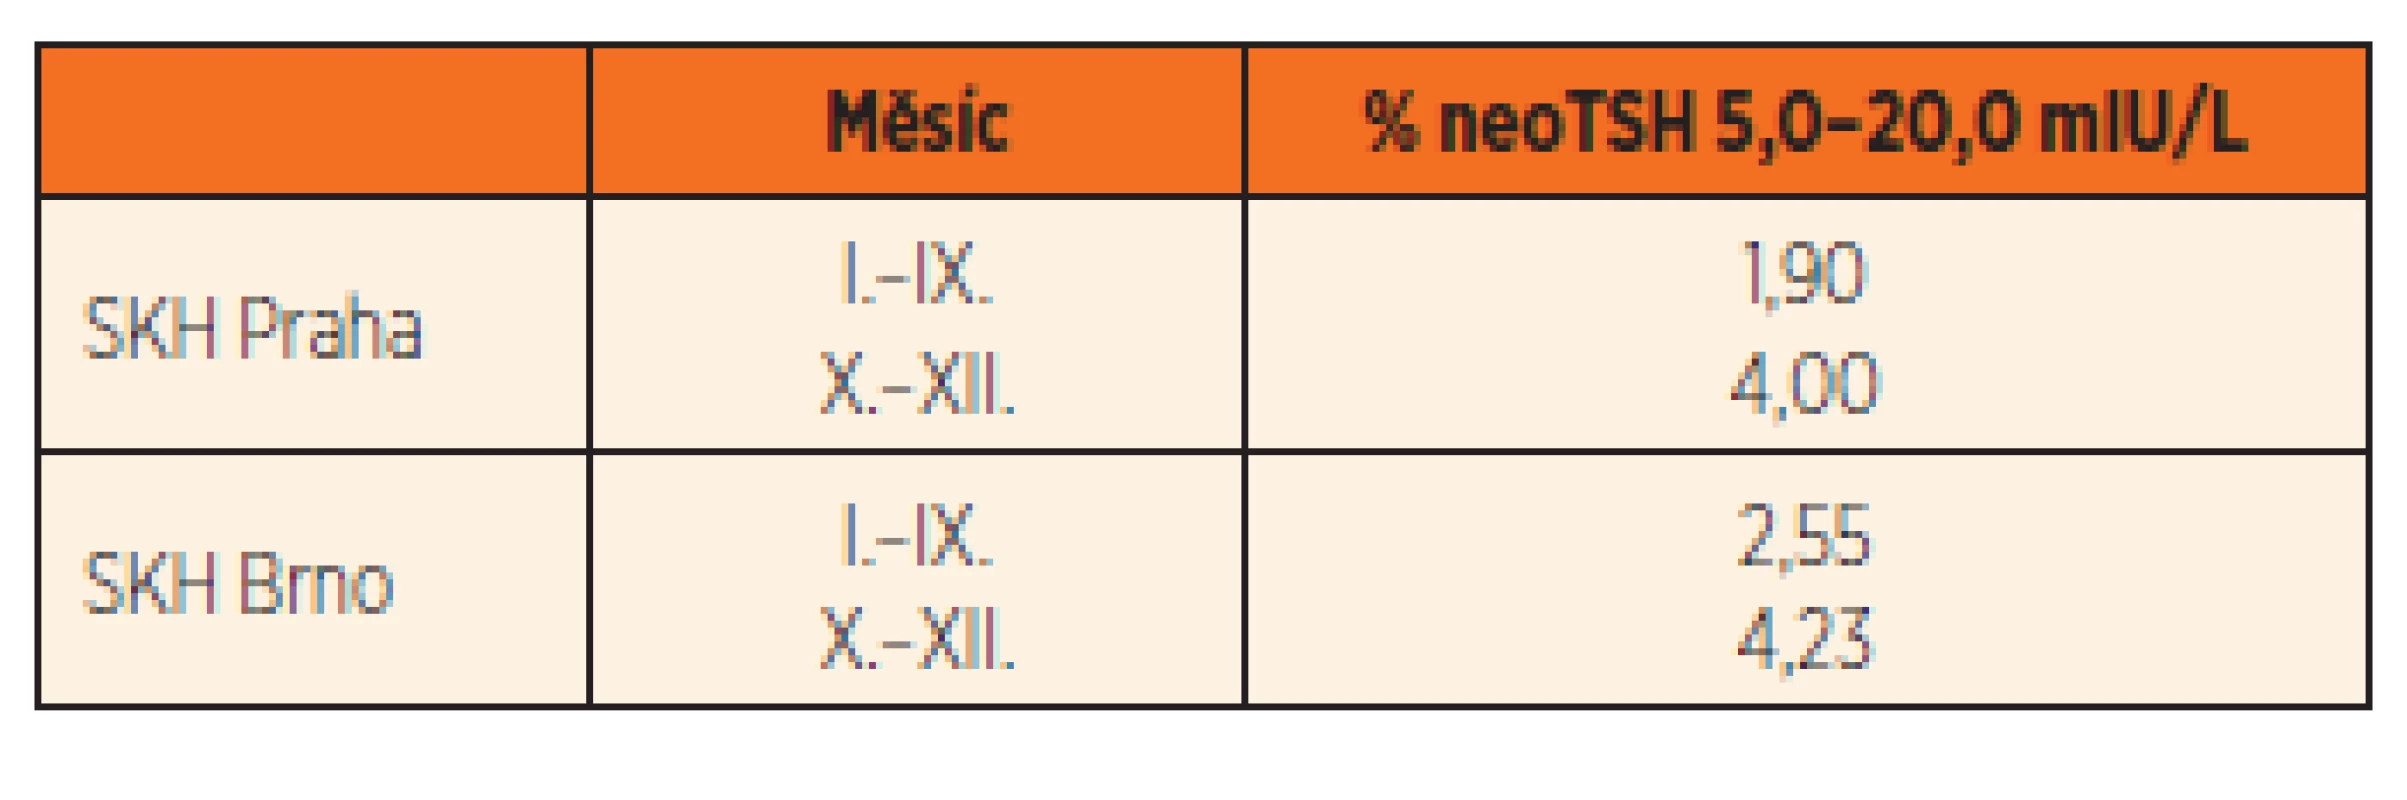 Změny procent hodnoty neoTSH 5,0–20,0 mIU/L v roce 2009.